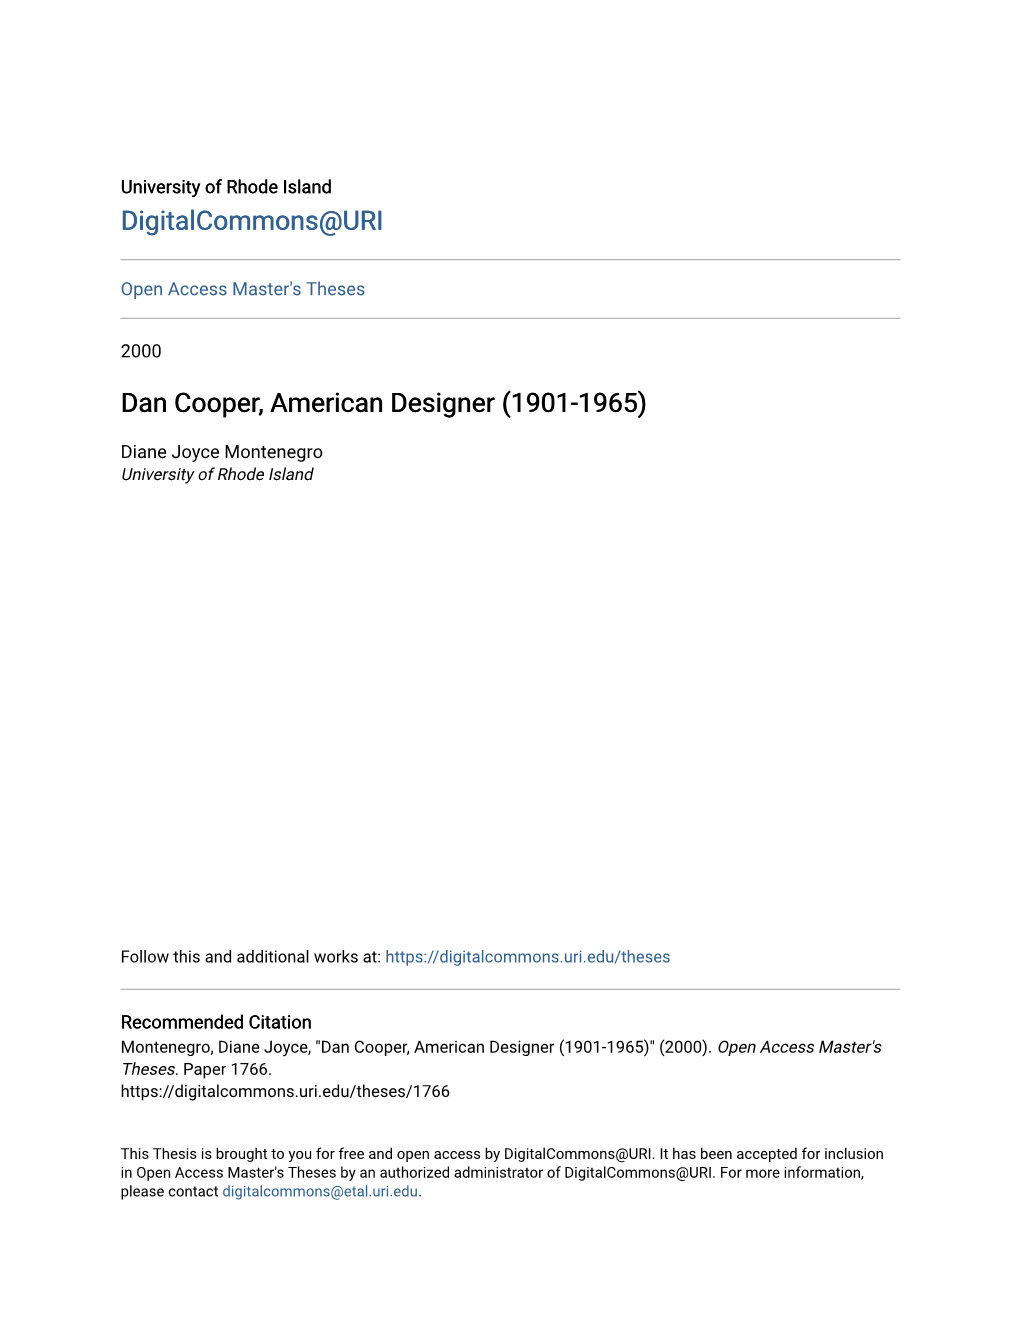 Dan Cooper, American Designer (1901-1965)